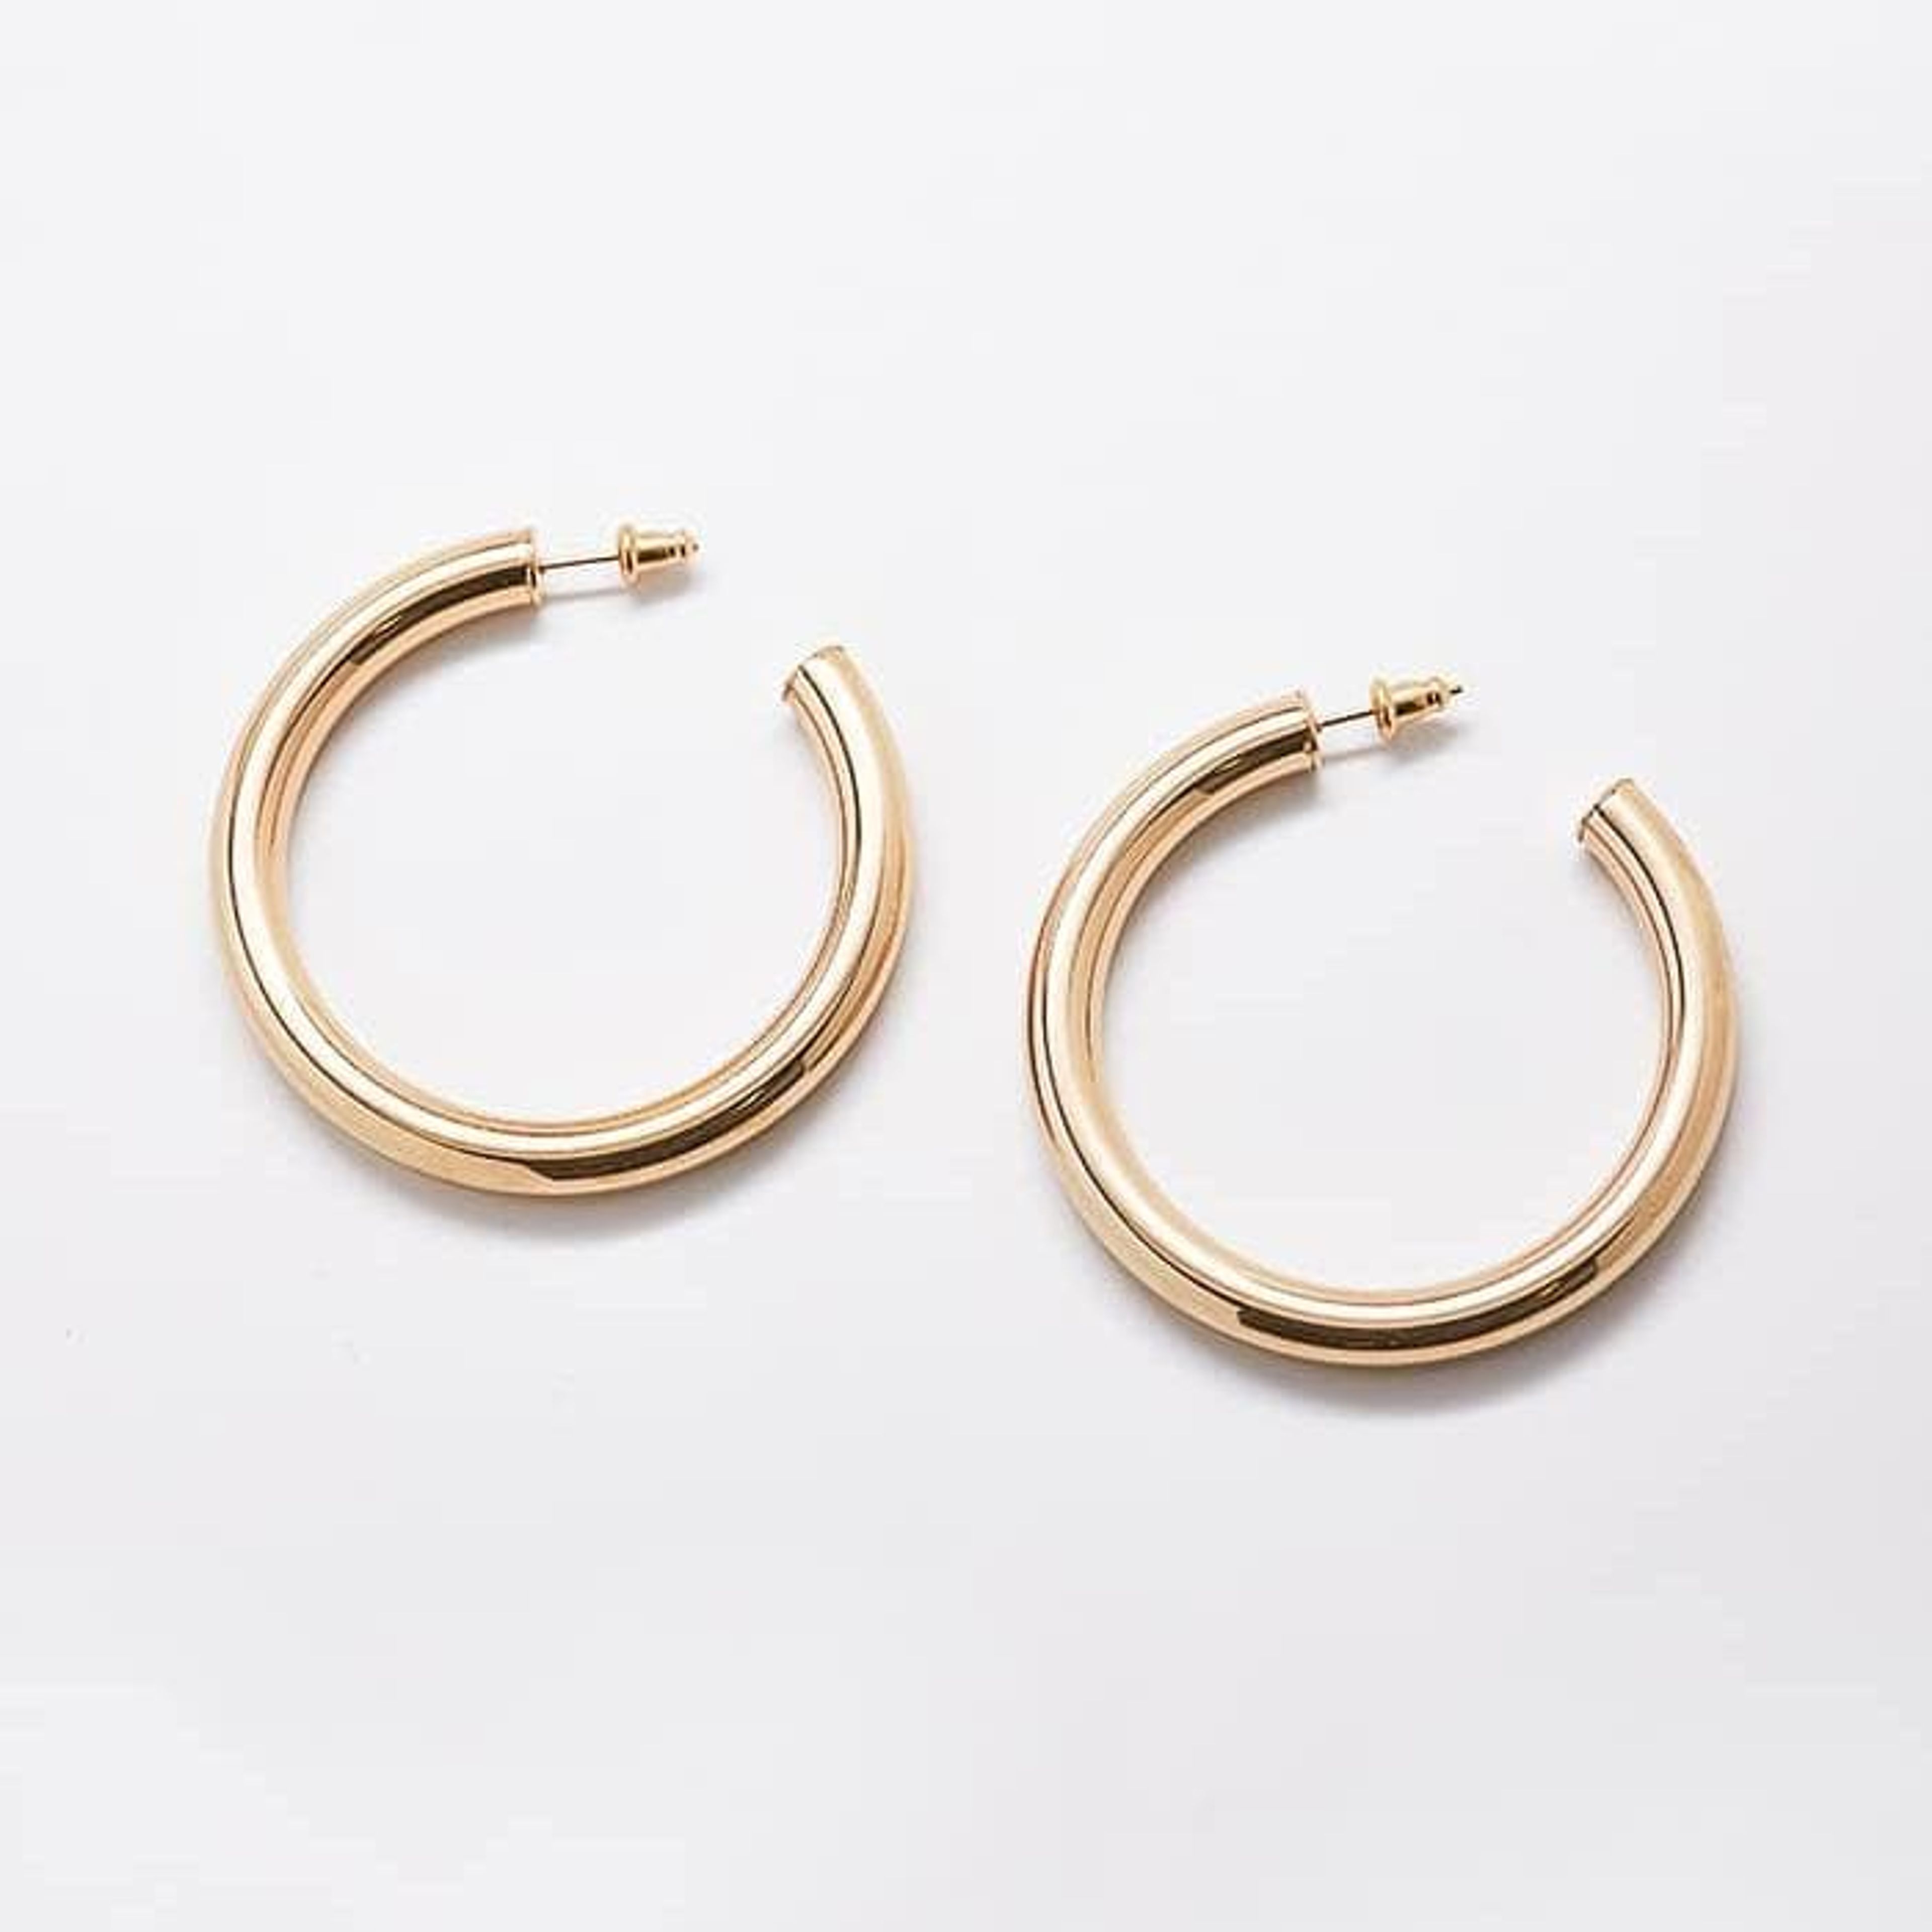 Medium Gold Hoop Earrings - Best Seller